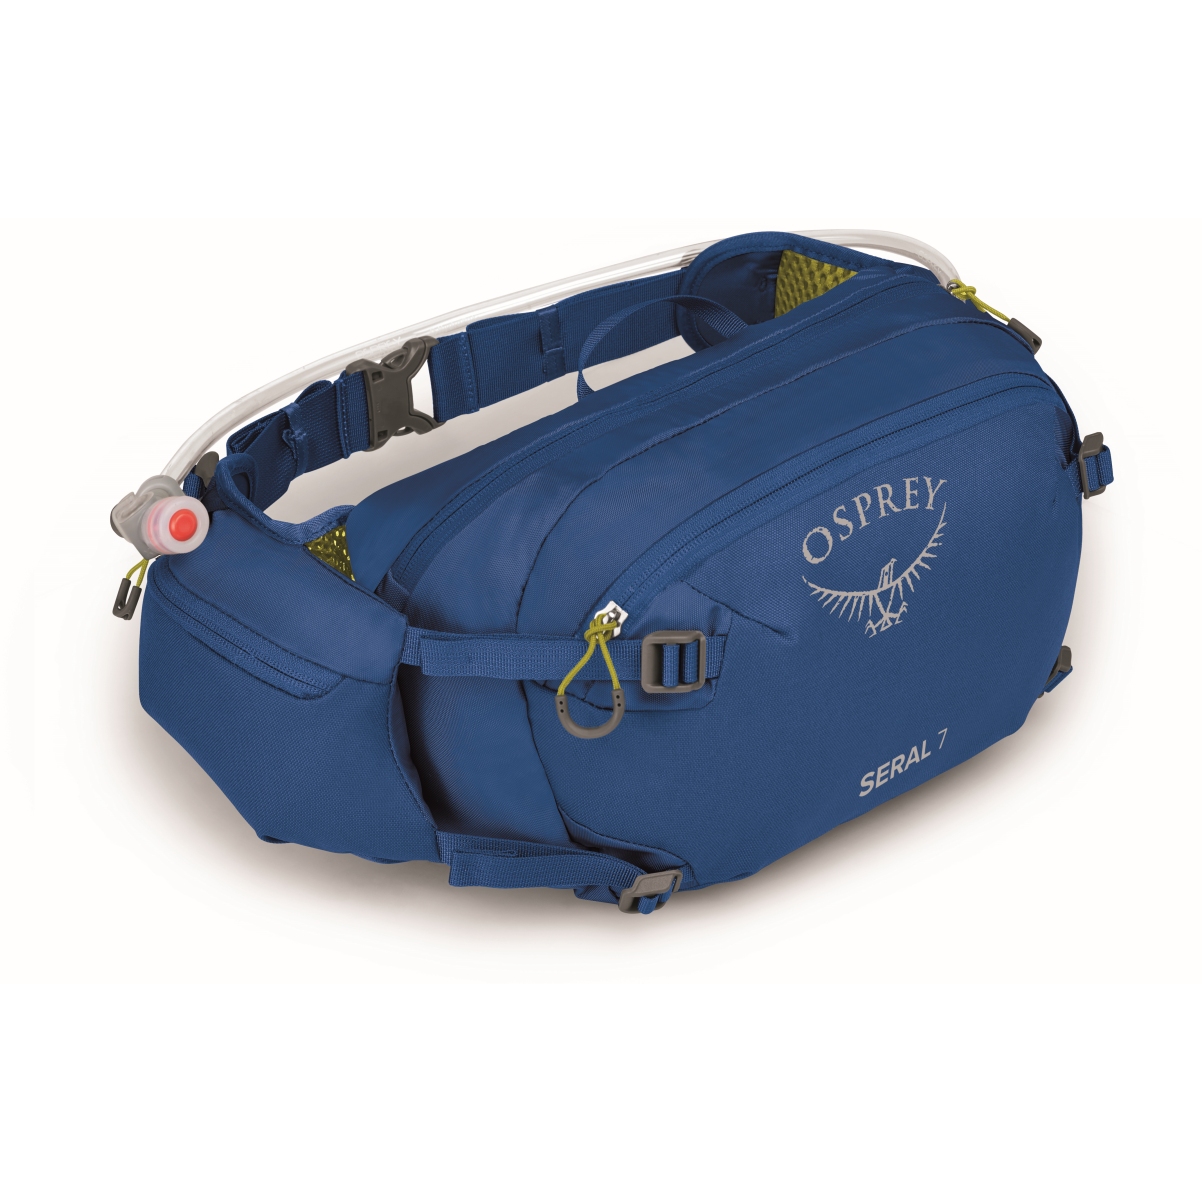 Produktbild von Osprey Seral 7 Hüfttasche + Trinkblase - Postal Blue